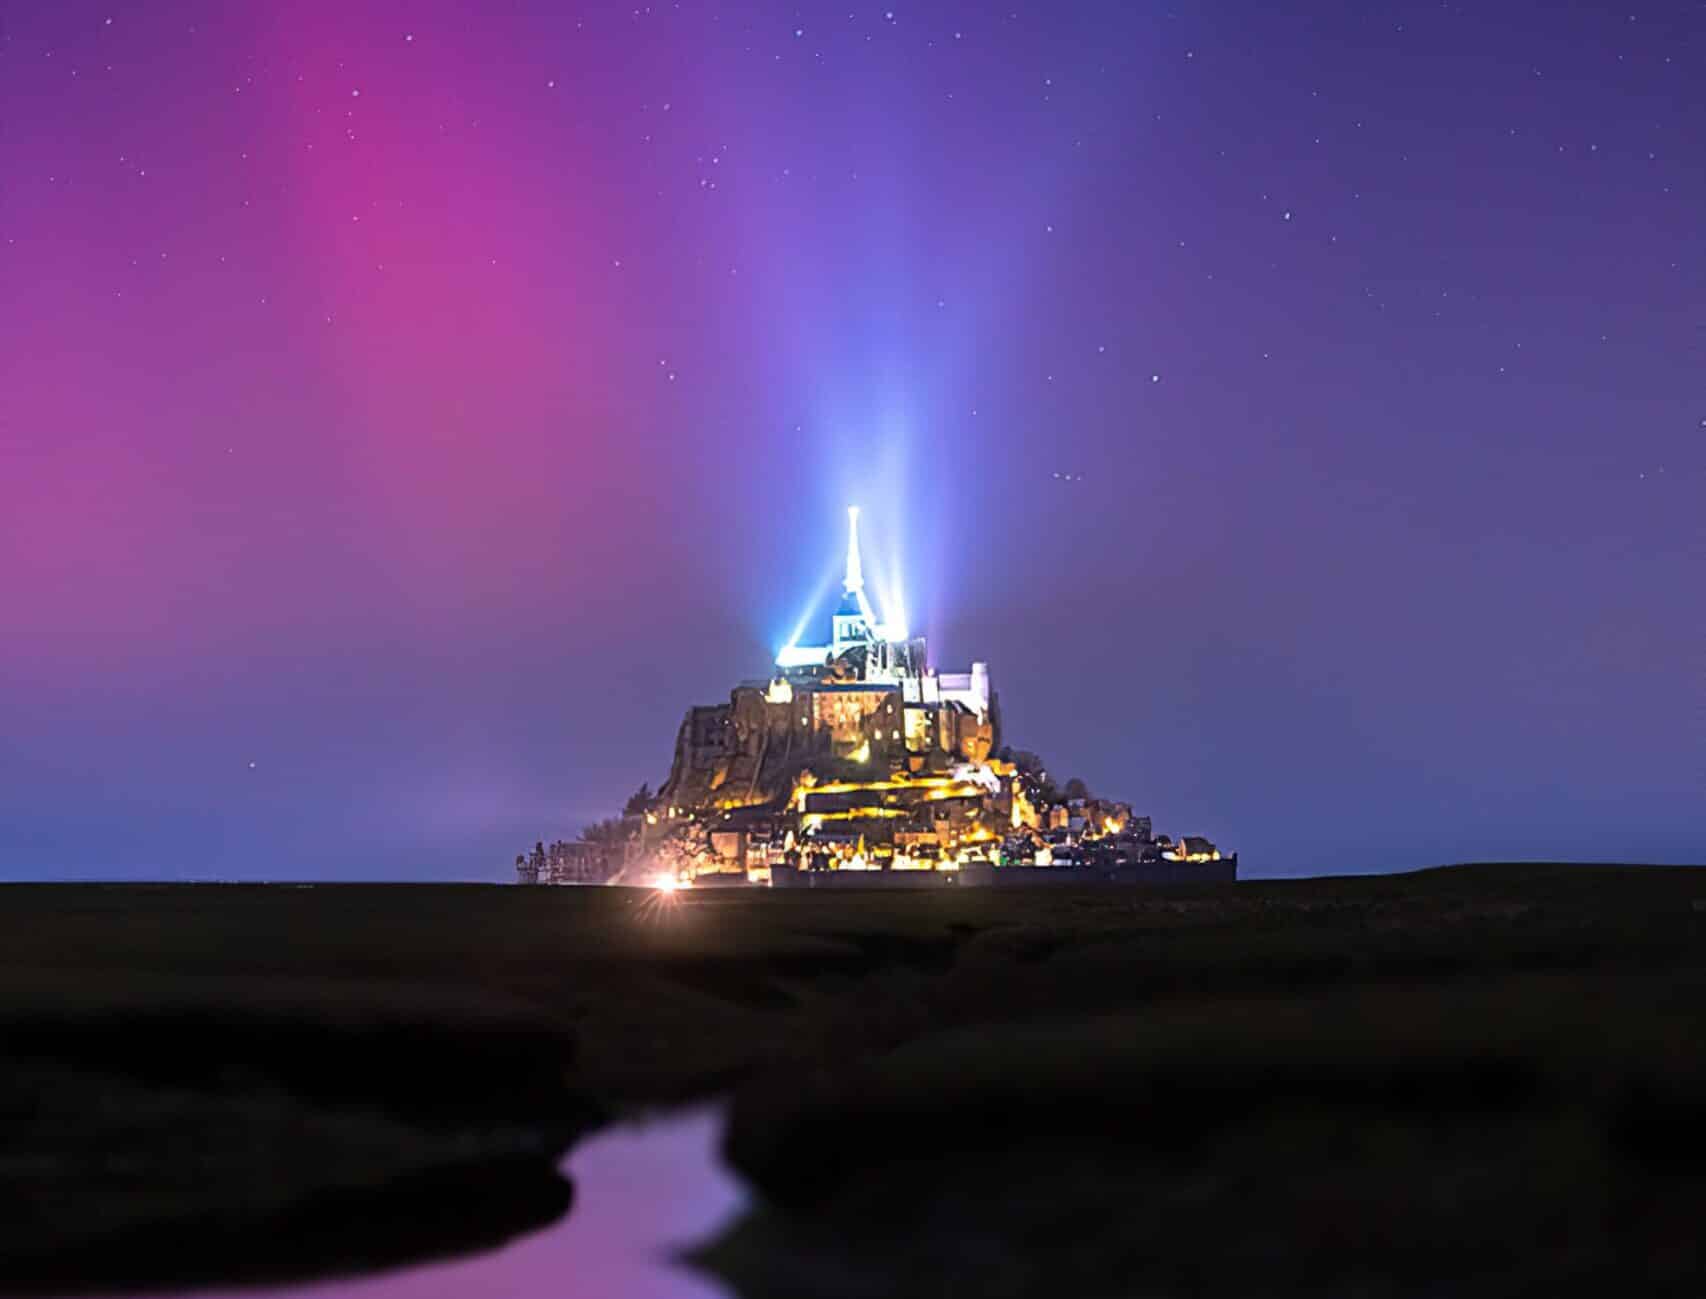 Photographie d'une aurore boréale au dessus du mont saint michel